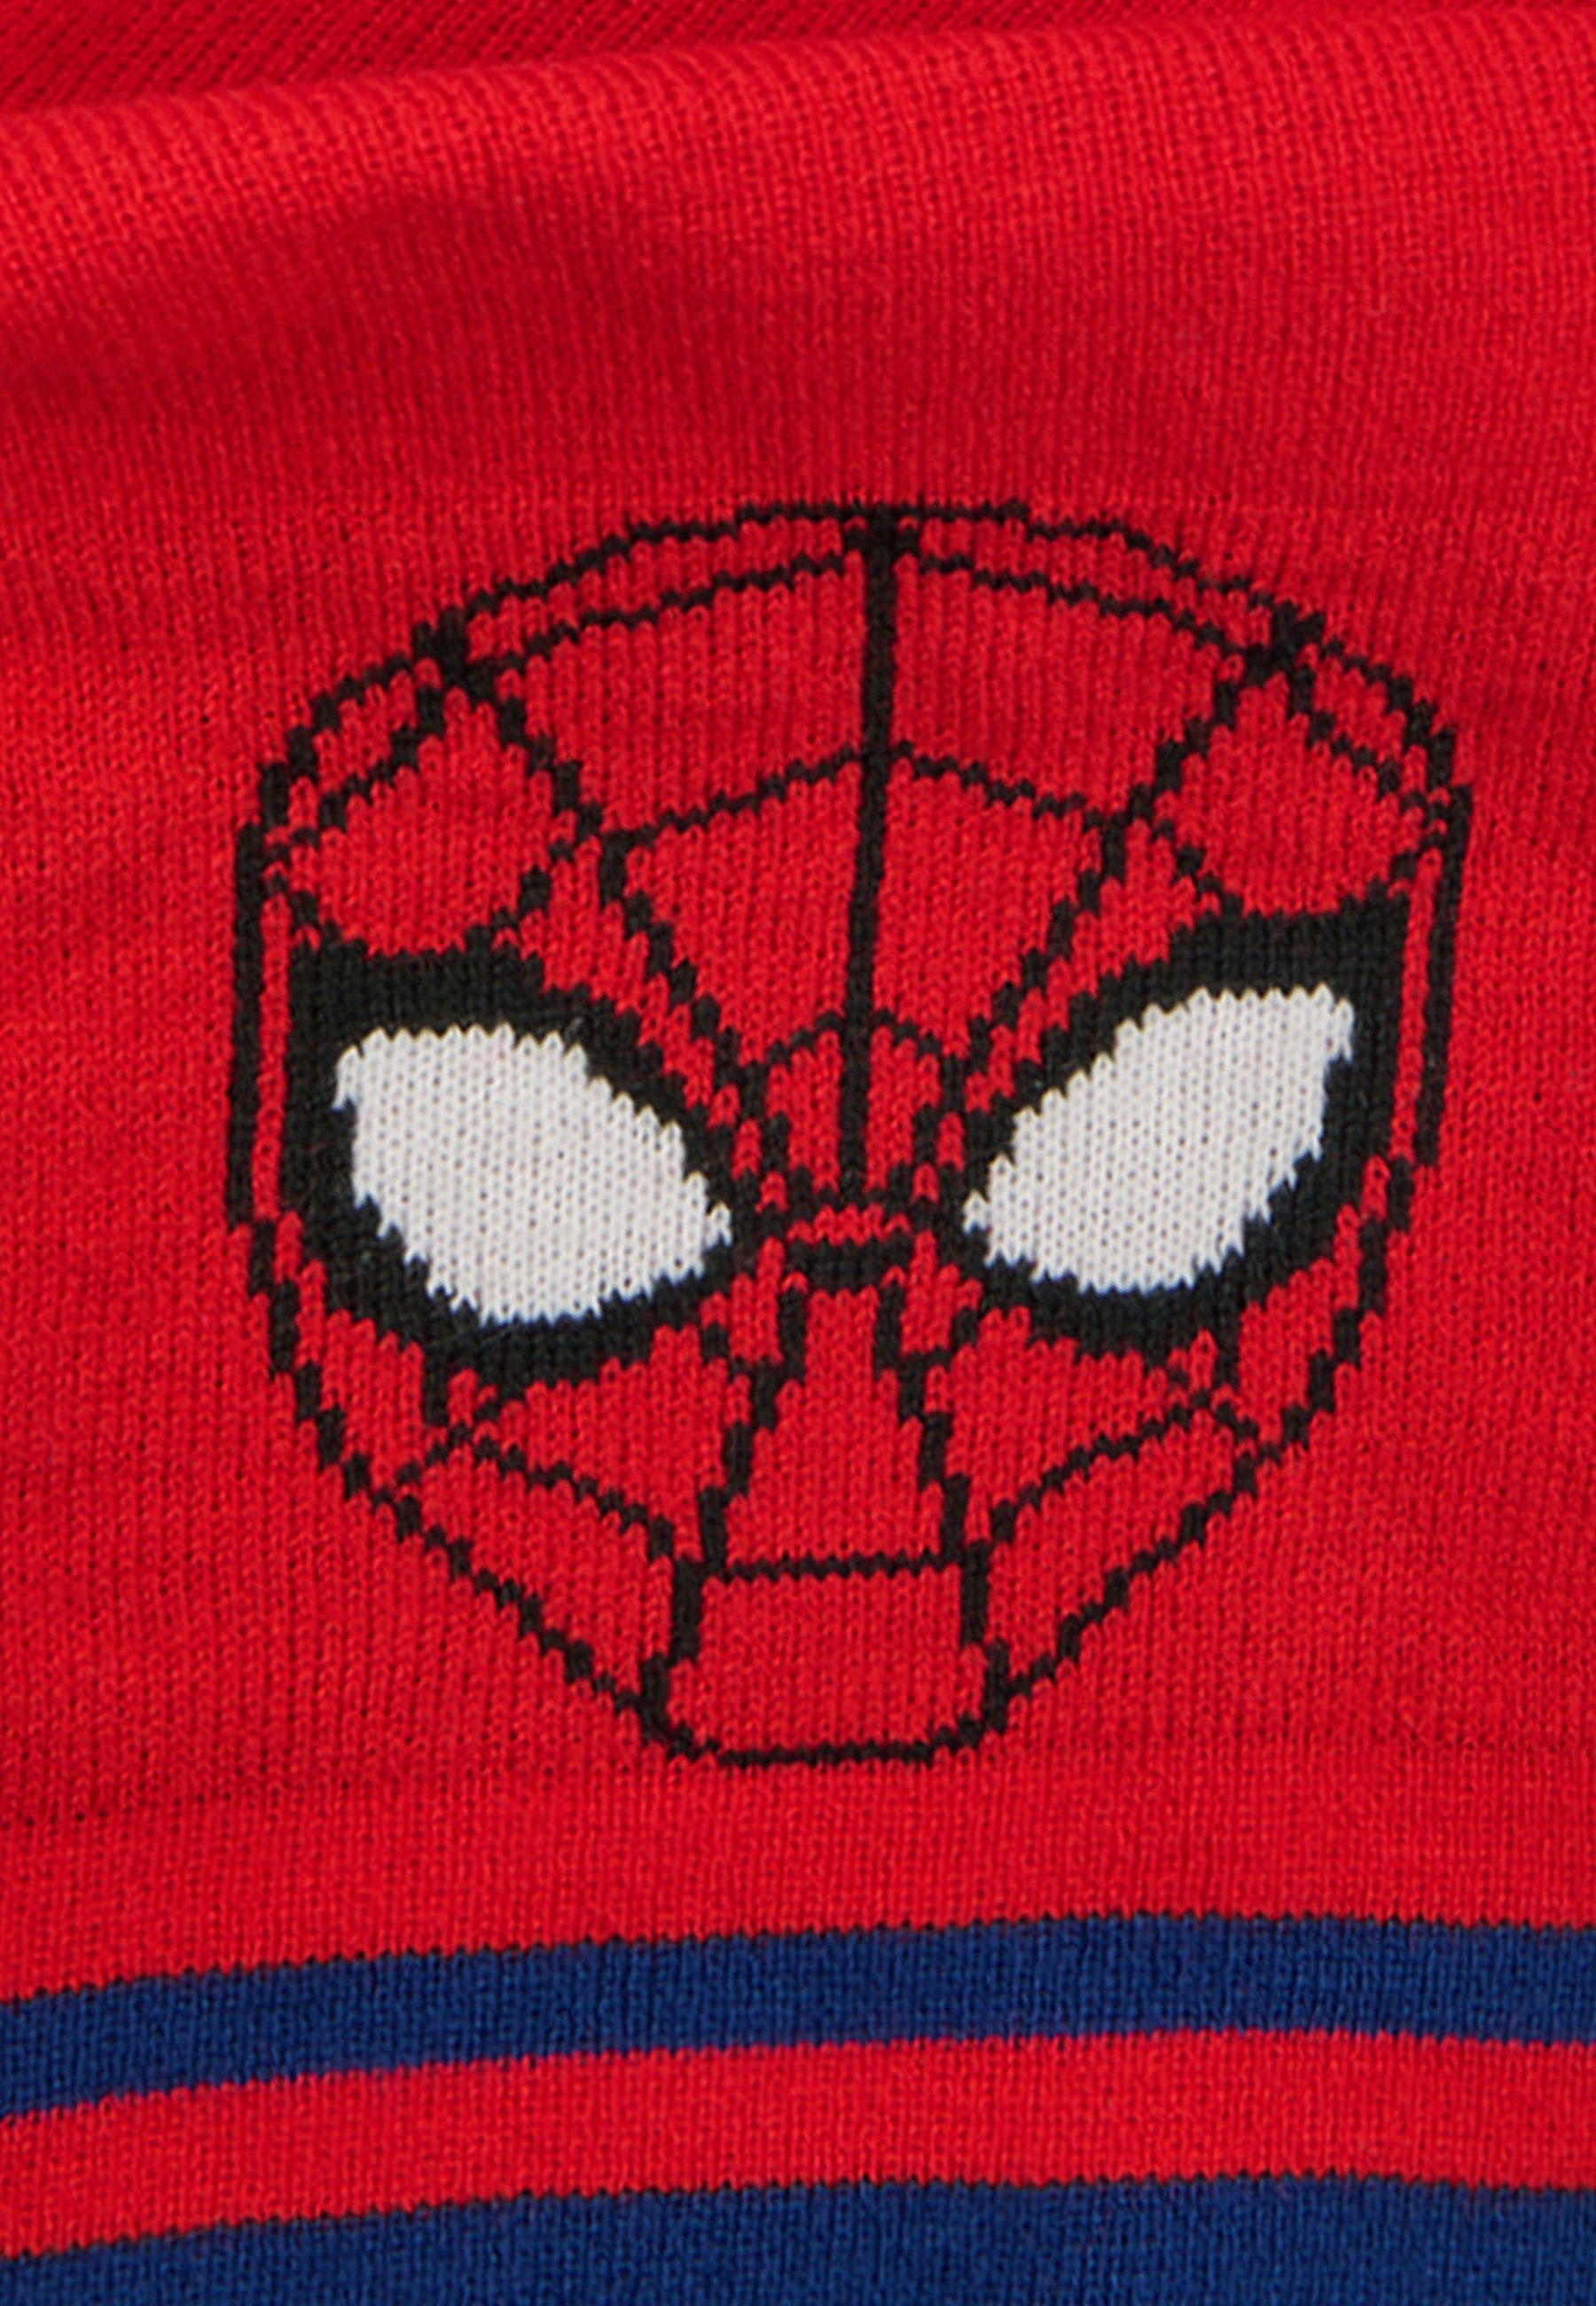 ONOMATO! Strickschal Spider-Man Jungen Kinder Winter-Schal